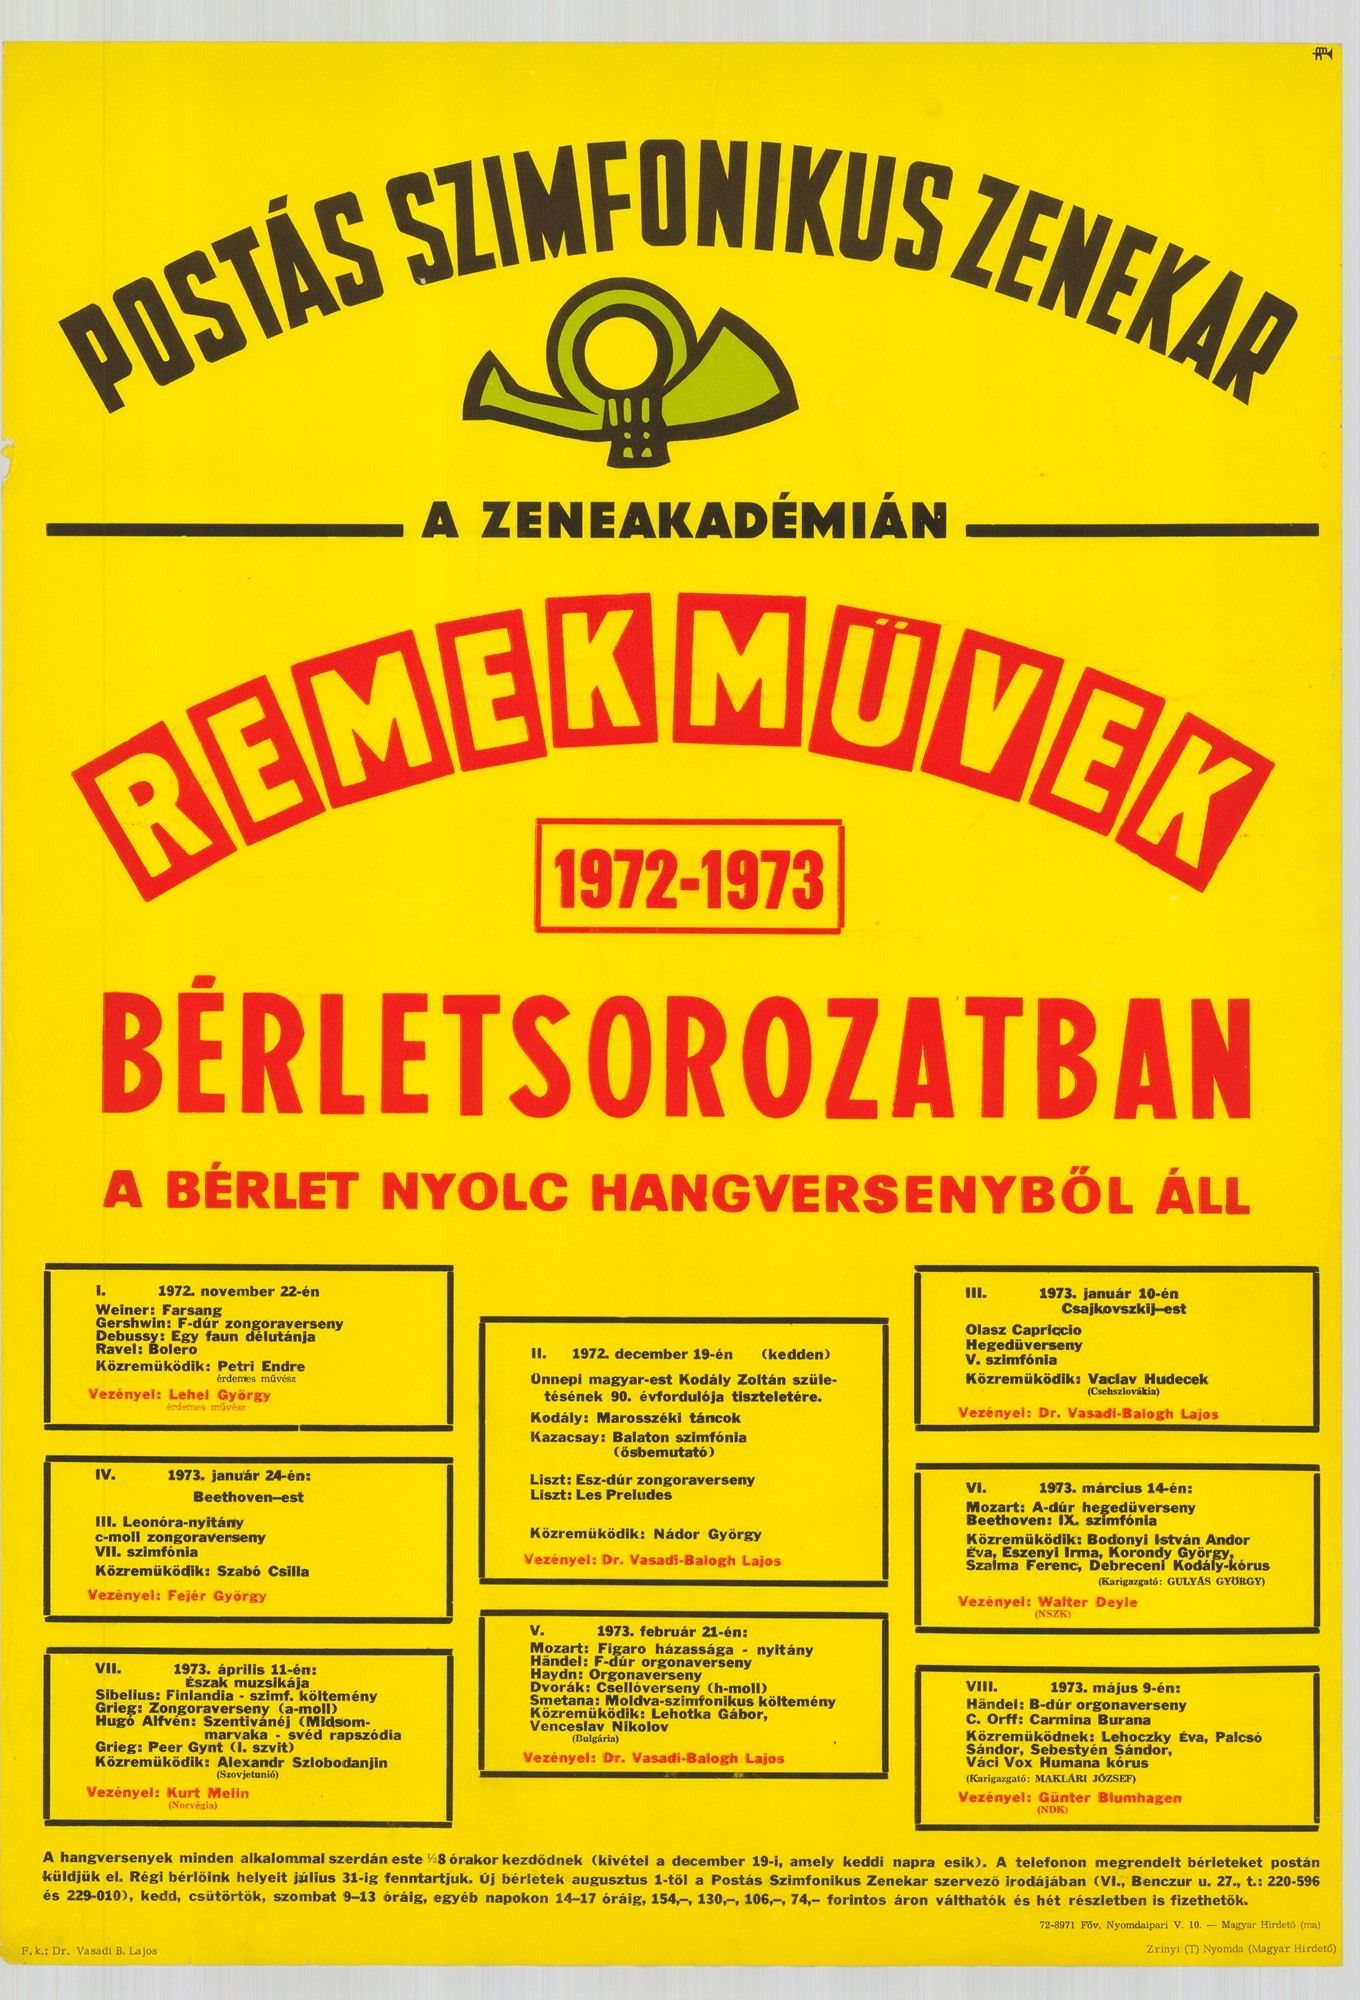 Plakát - Postás Szimfonikus Zenekar a Zeneakadémián, Remekművek, 1972-73 (Postamúzeum CC BY-NC-SA)